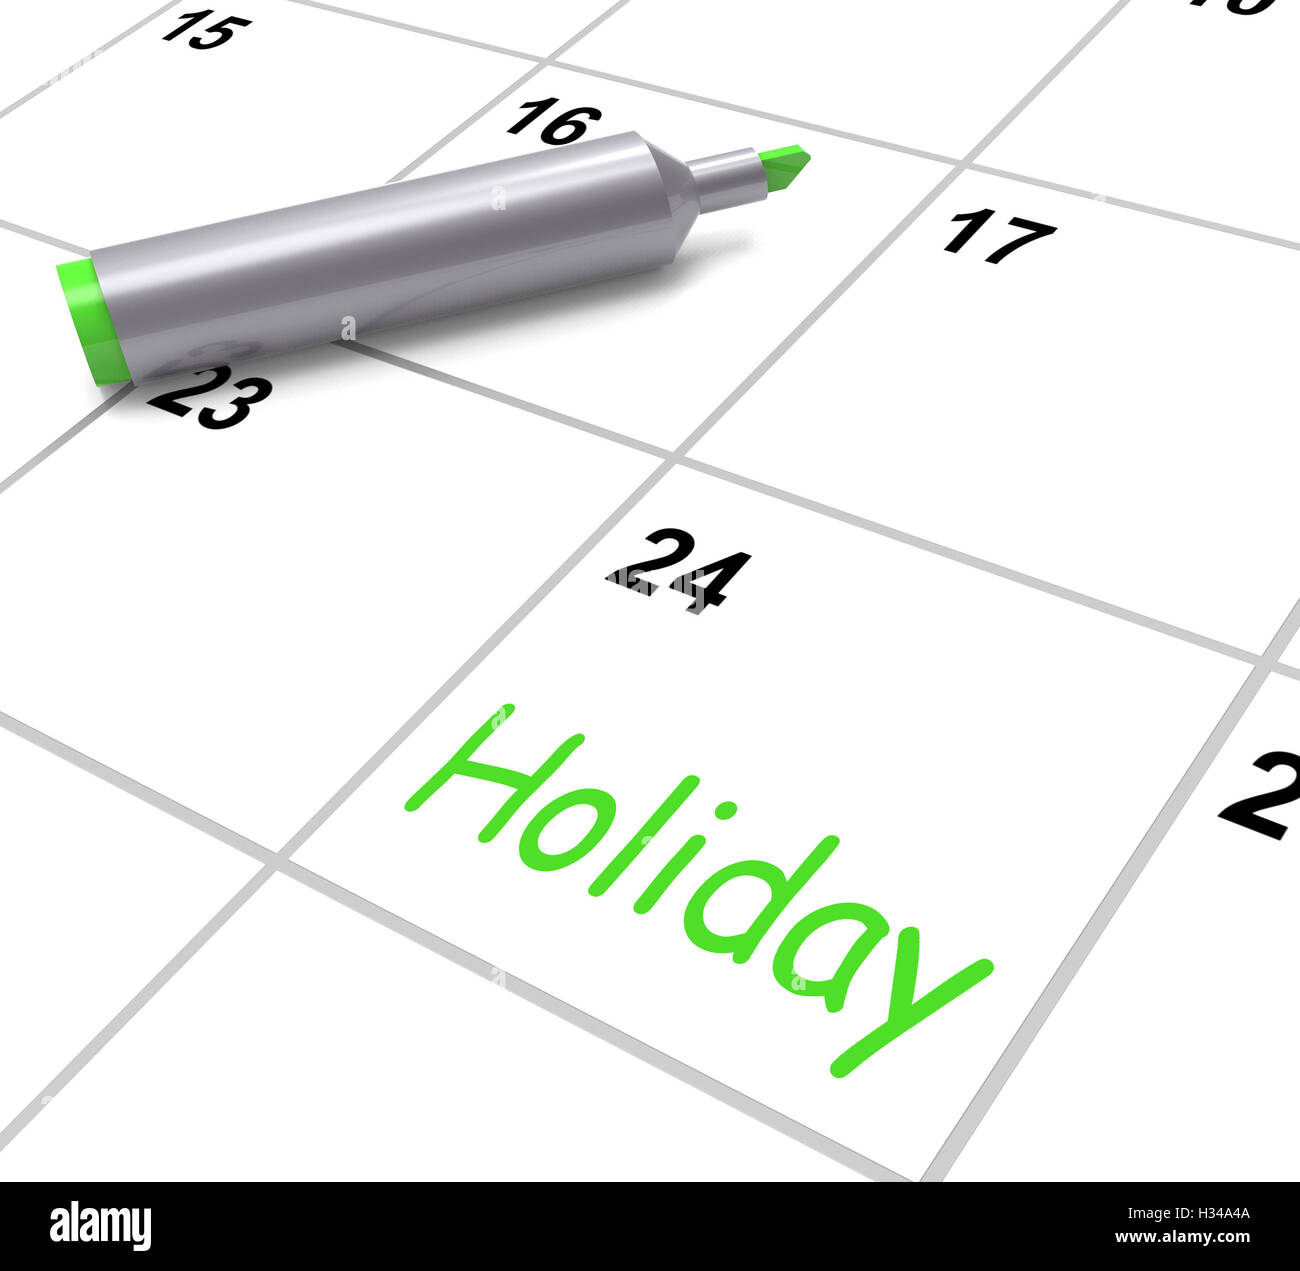 Calendario de vacaciones muestra dia de descanso y descanso del trabajo Foto de stock